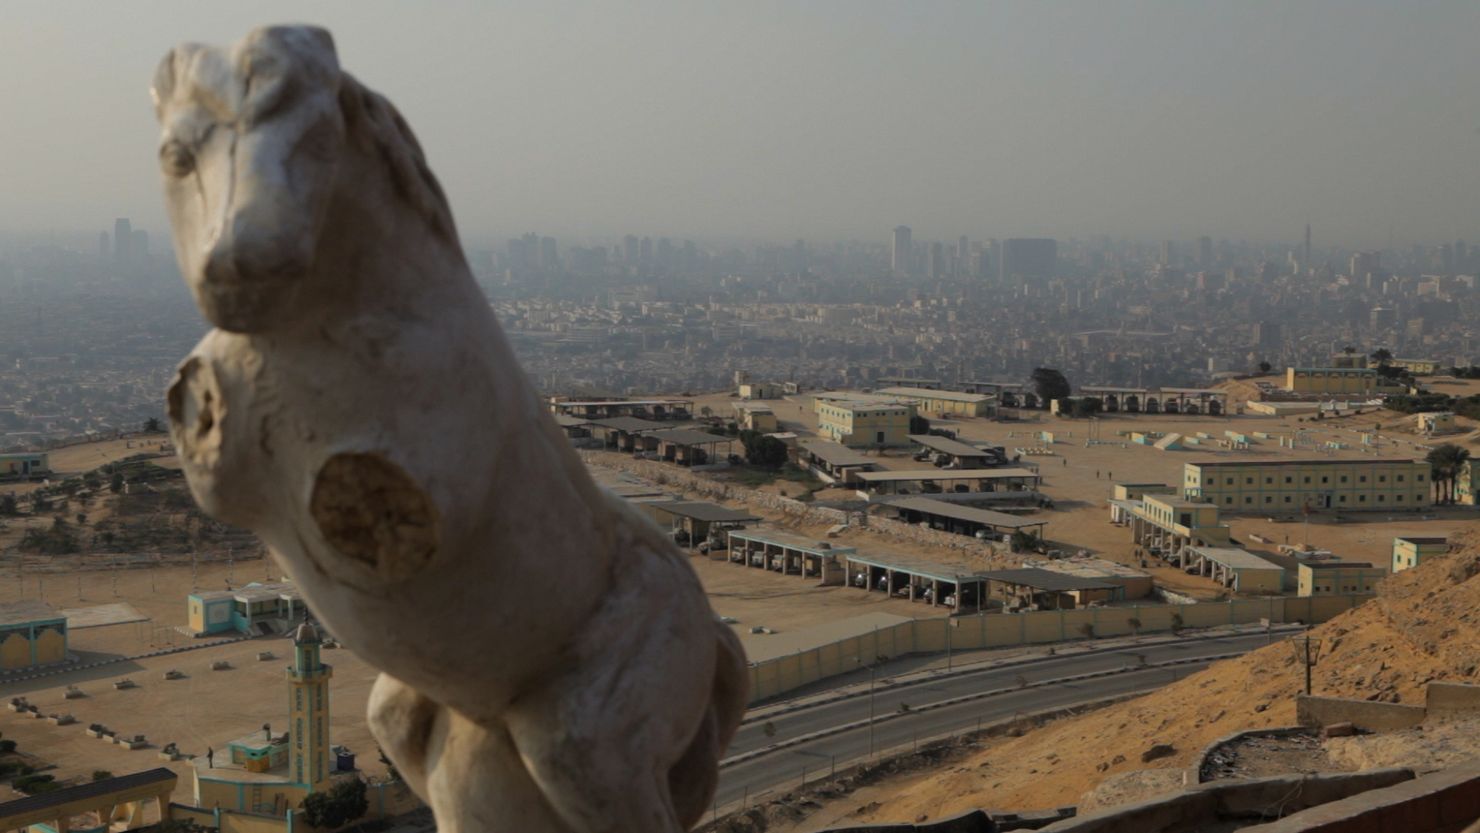 Eine Marmorskulptur eines pferdeähnlichen Tieres mit verstümmelten oberen Gliedmaßen vor einem Gebiet mit industriell anmutender Infrastruktur und. Im Hintergrund ist eine Stadt im Nahen Osten zu sehen.